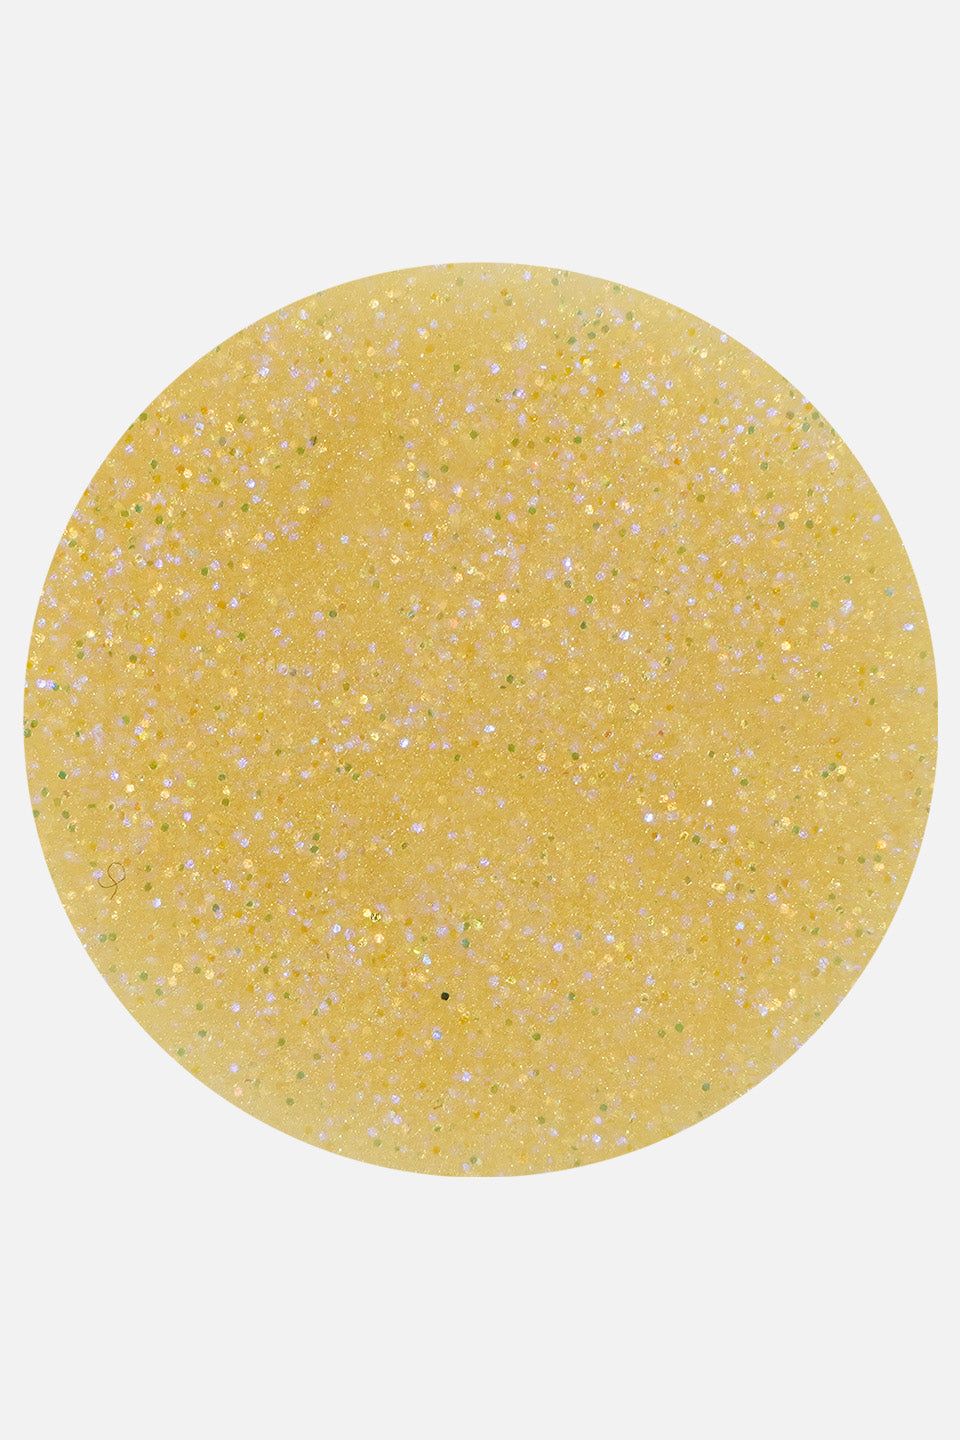 Polvere acrilica ocra glitter 5 g